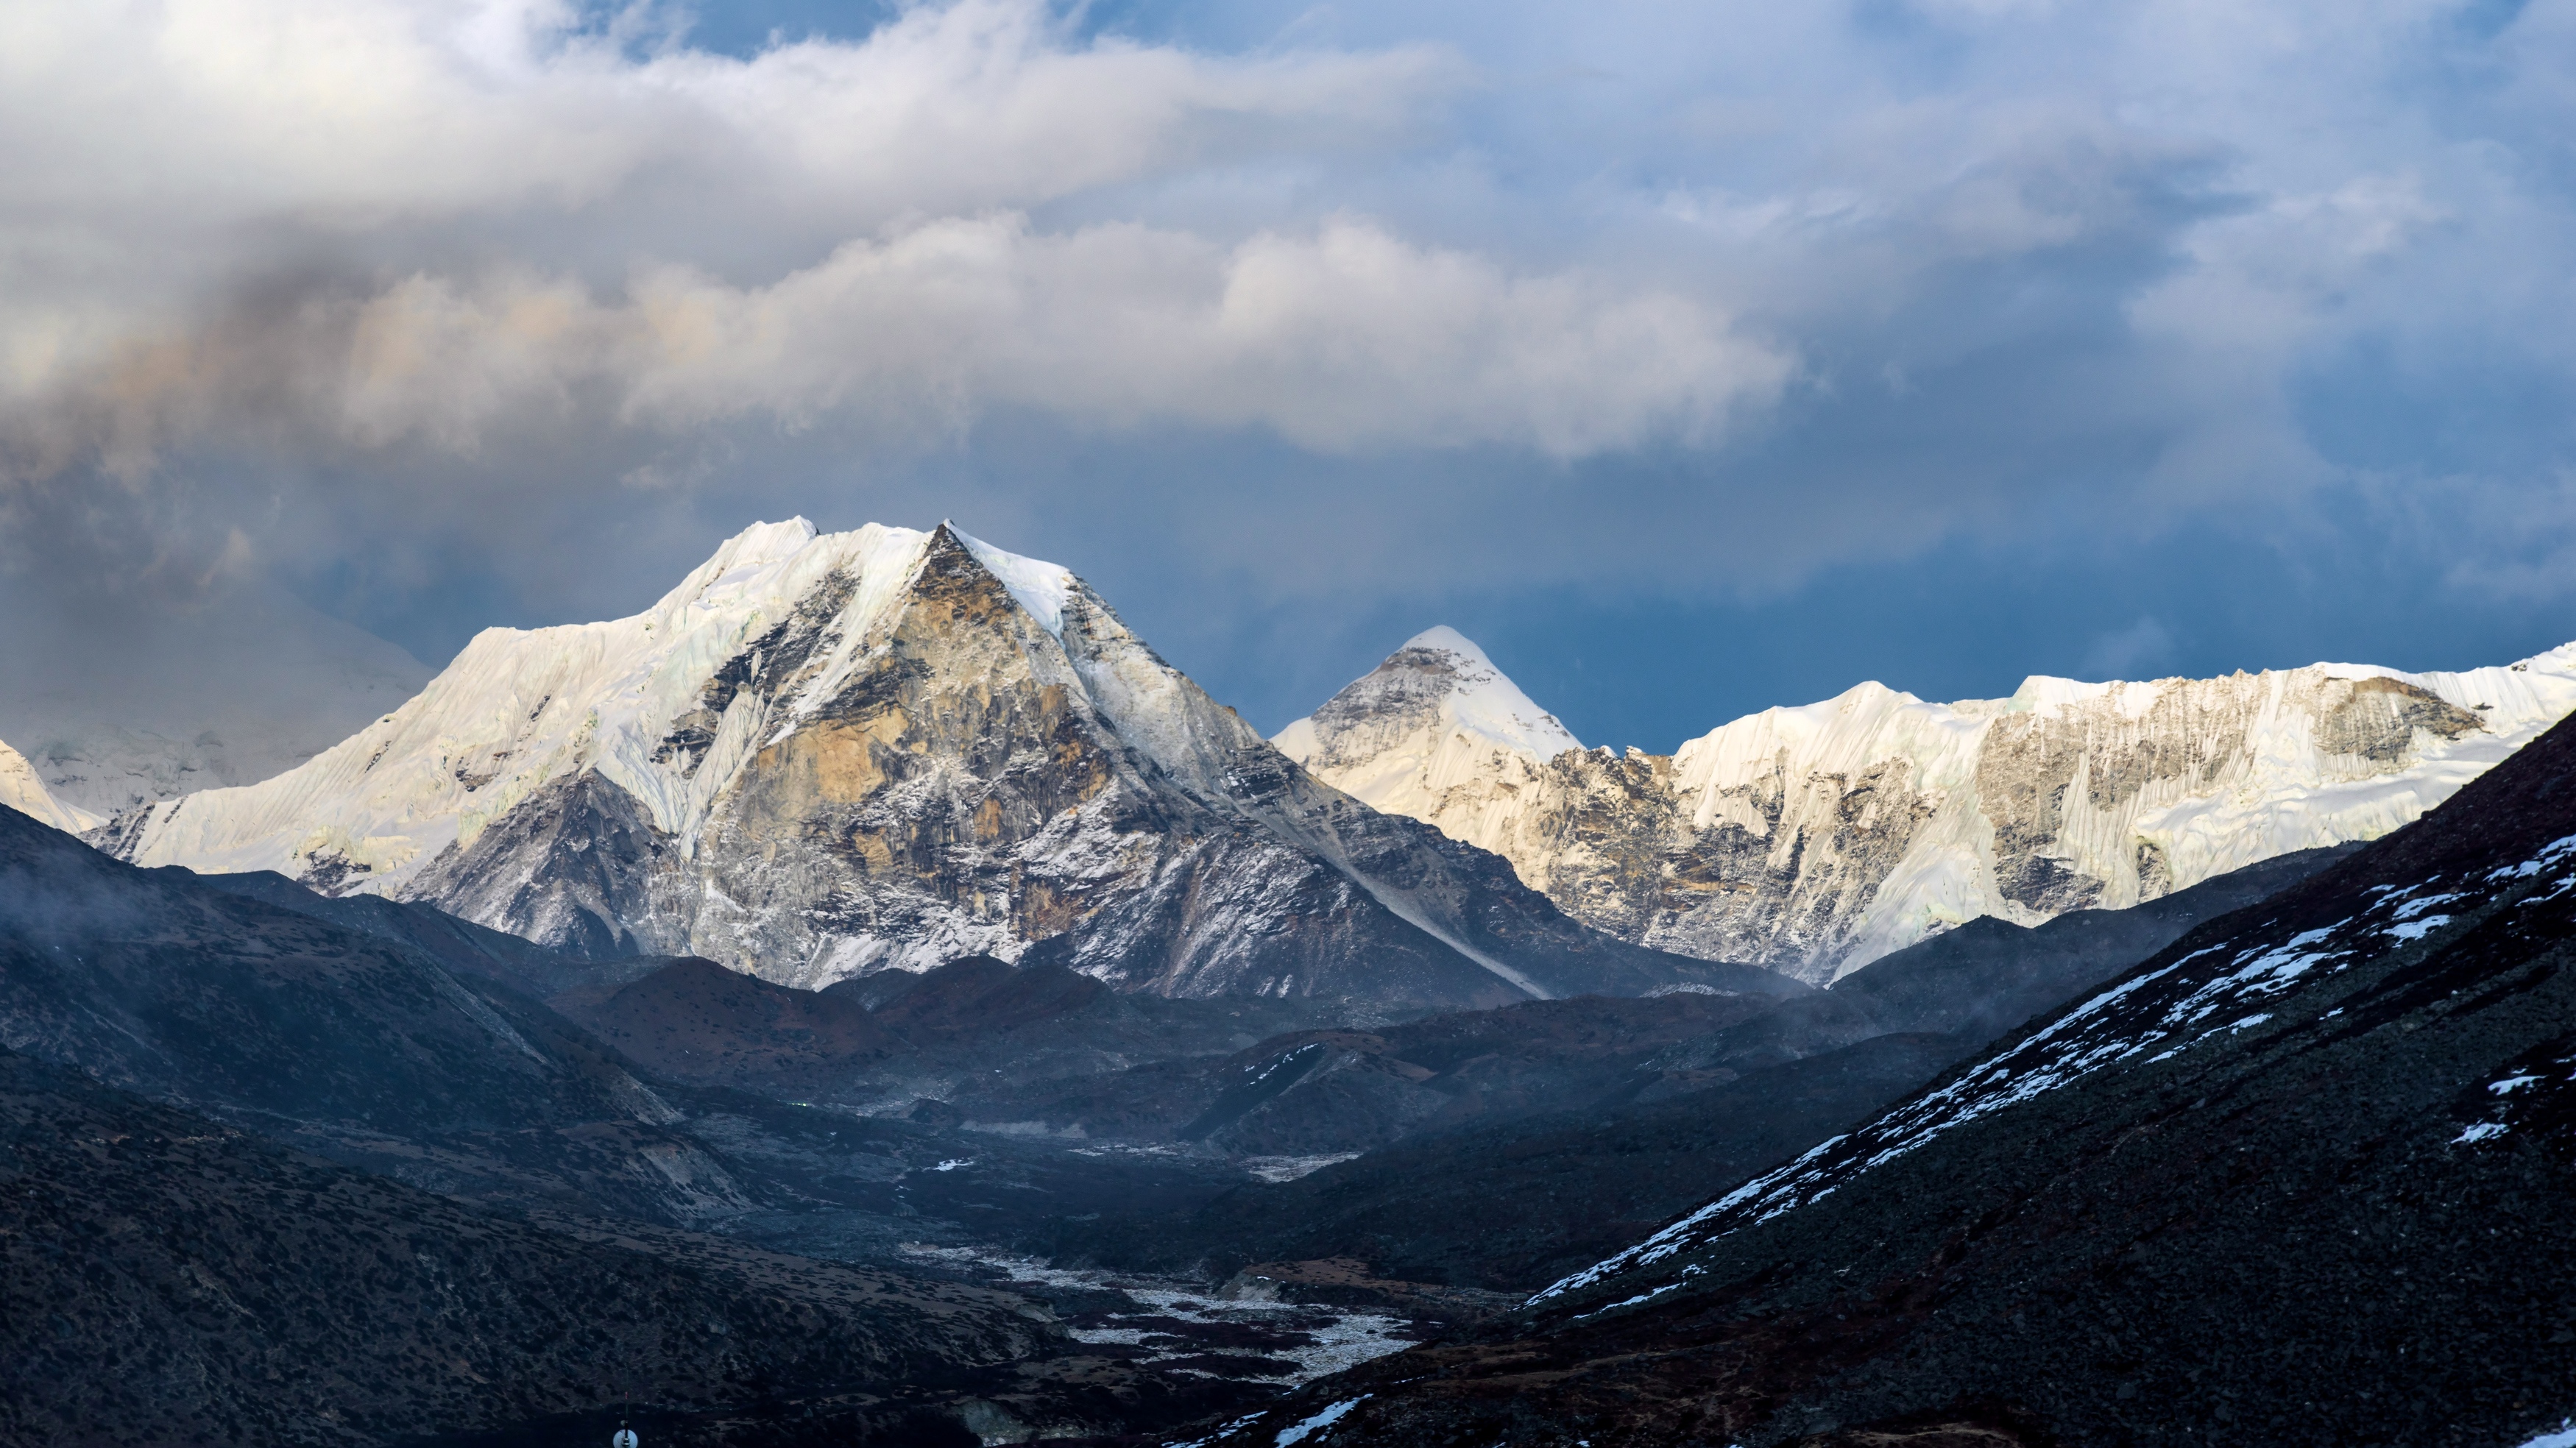 General 3500x1968 nature landscape mountain top Oleg Matronitskiy Island Peak Nepal